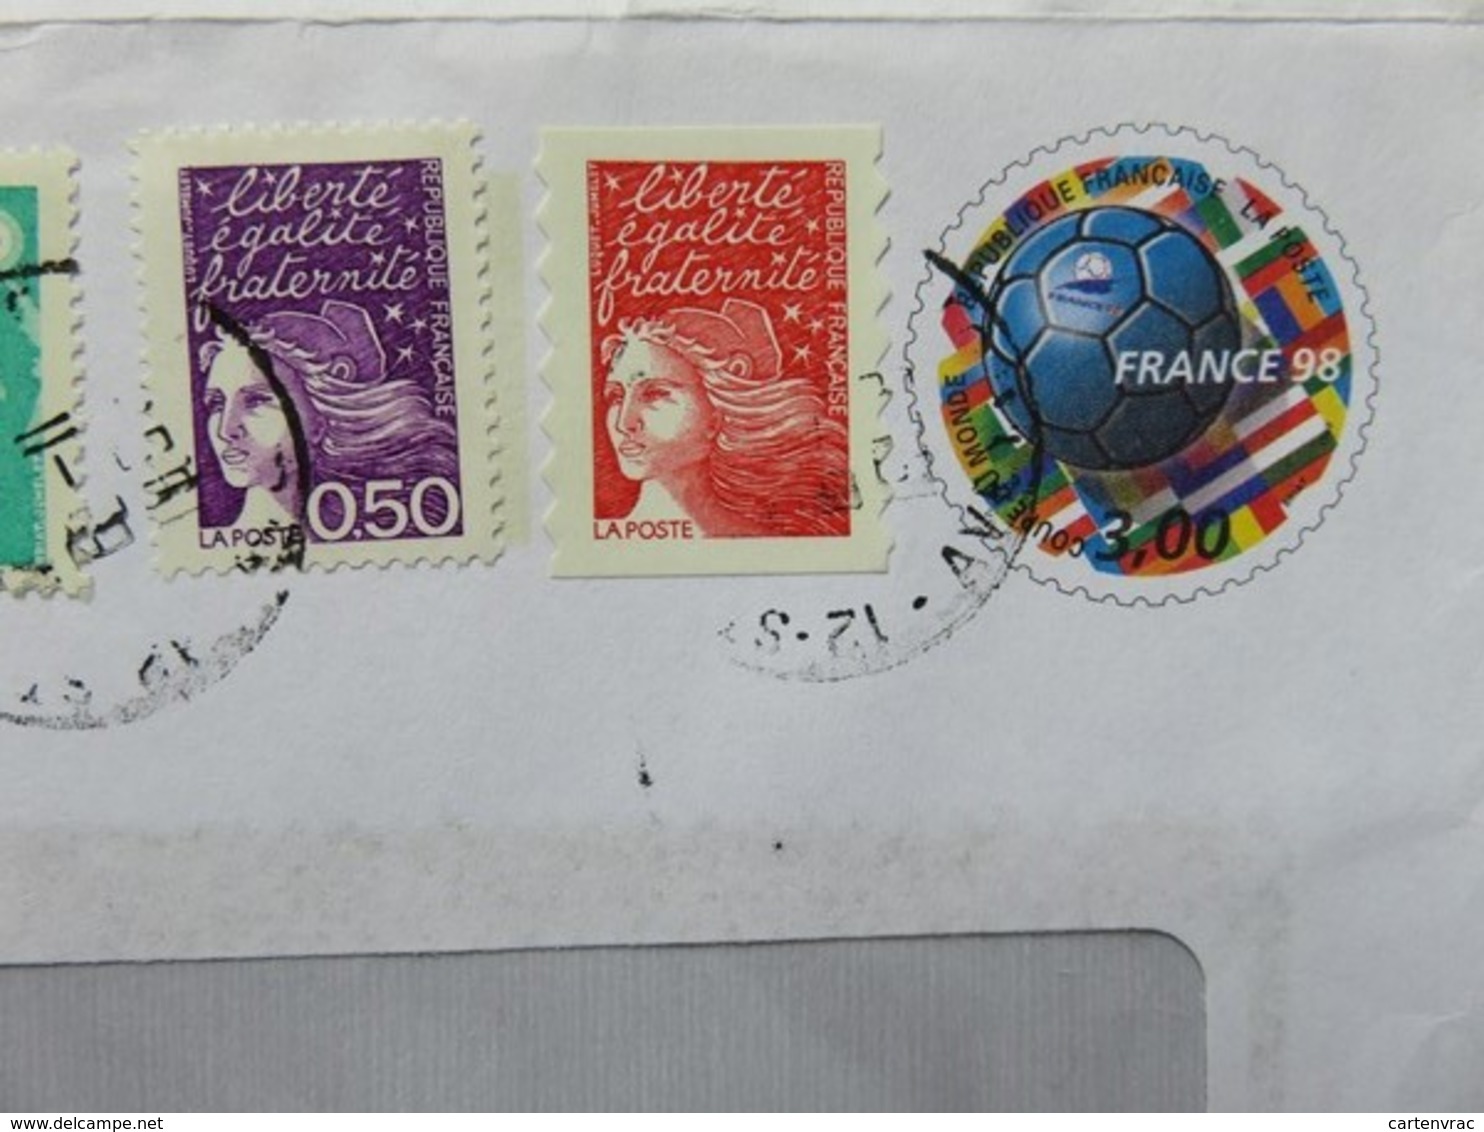 PAP - Entier Postal - Ballon De Briat France 98 - Ets Zuliani - St Affrique - Cachet à Date 06.11.1998 - Footix - PAP : Altri (1995-...)